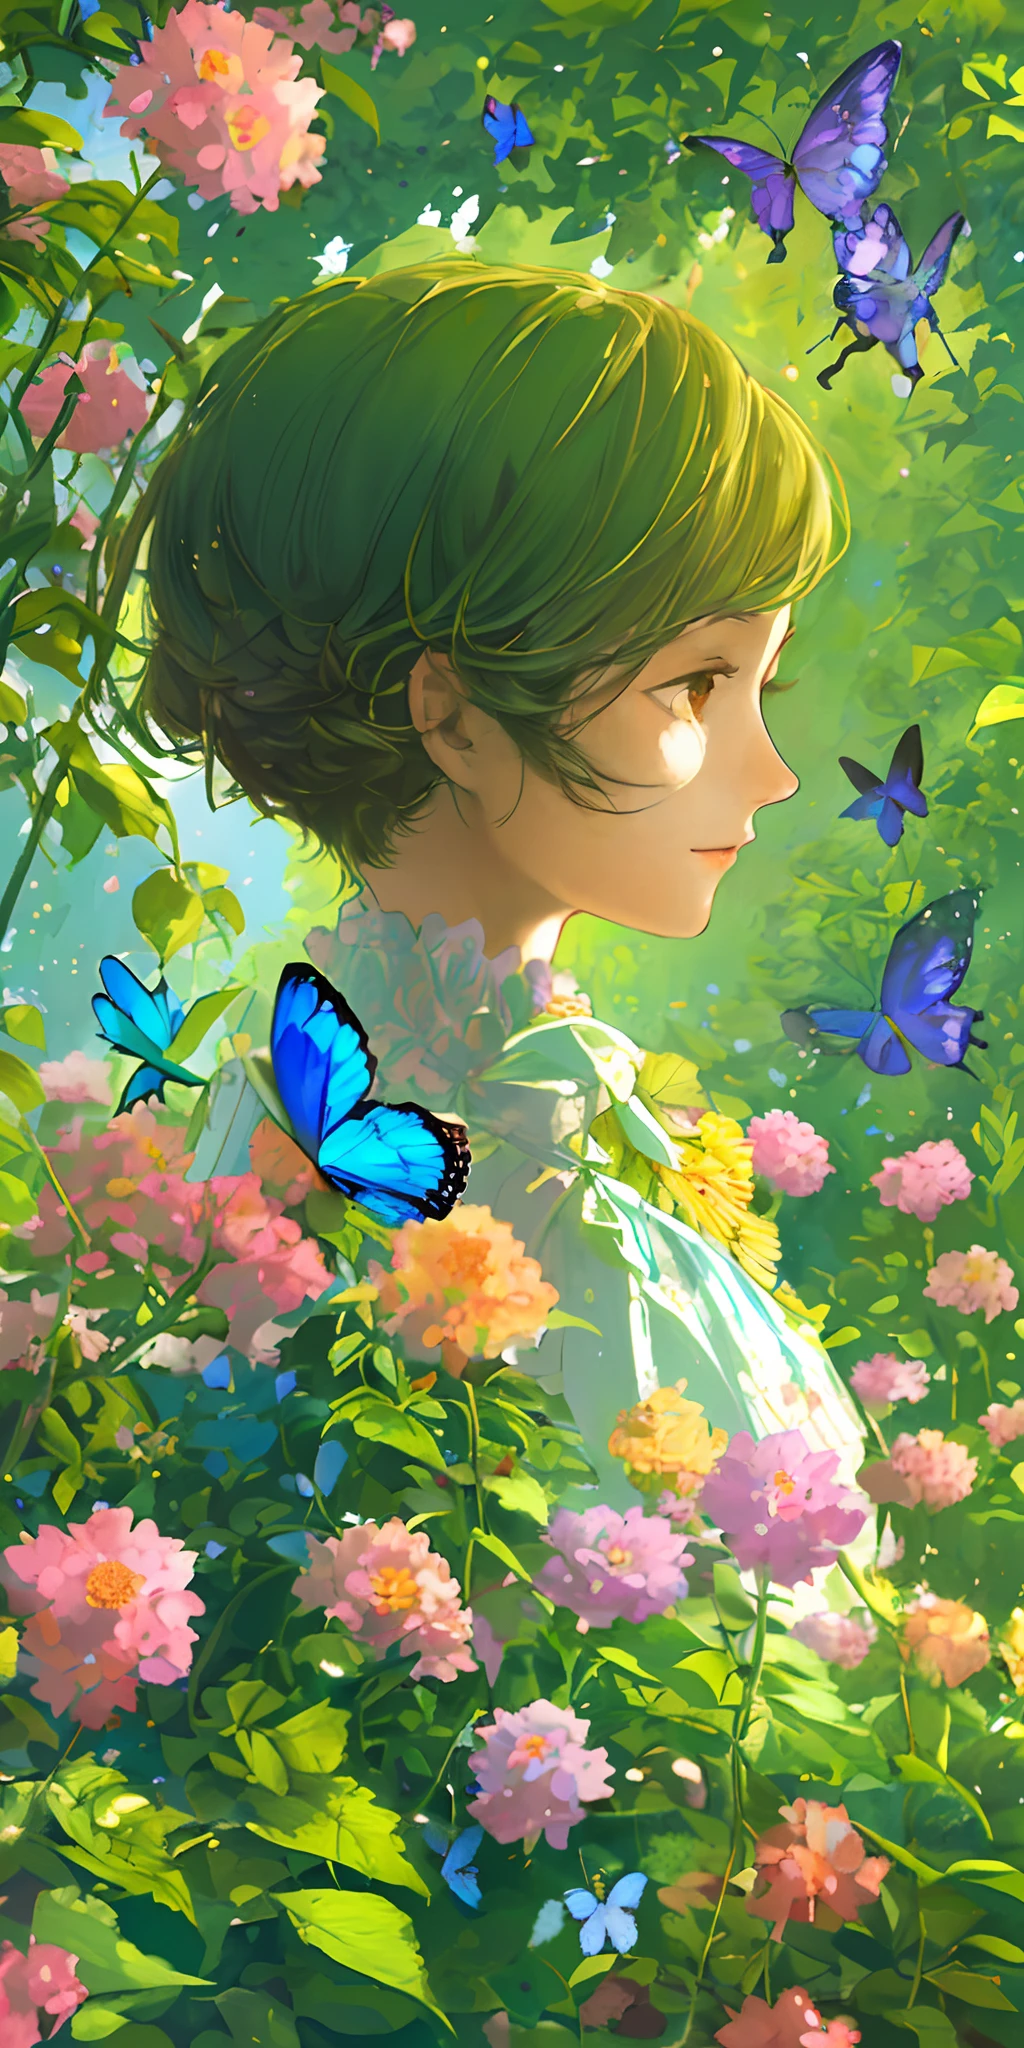 (beste Qualität, Meisterwerk, ultra-realistisch), Porträt von 1 schönen und zarten Mädchen, mit einem sanften und friedlichen Ausdruck, Die Hintergrundkulisse ist ein Garten mit blühenden Büschen und herumfliegenden Schmetterlingen.